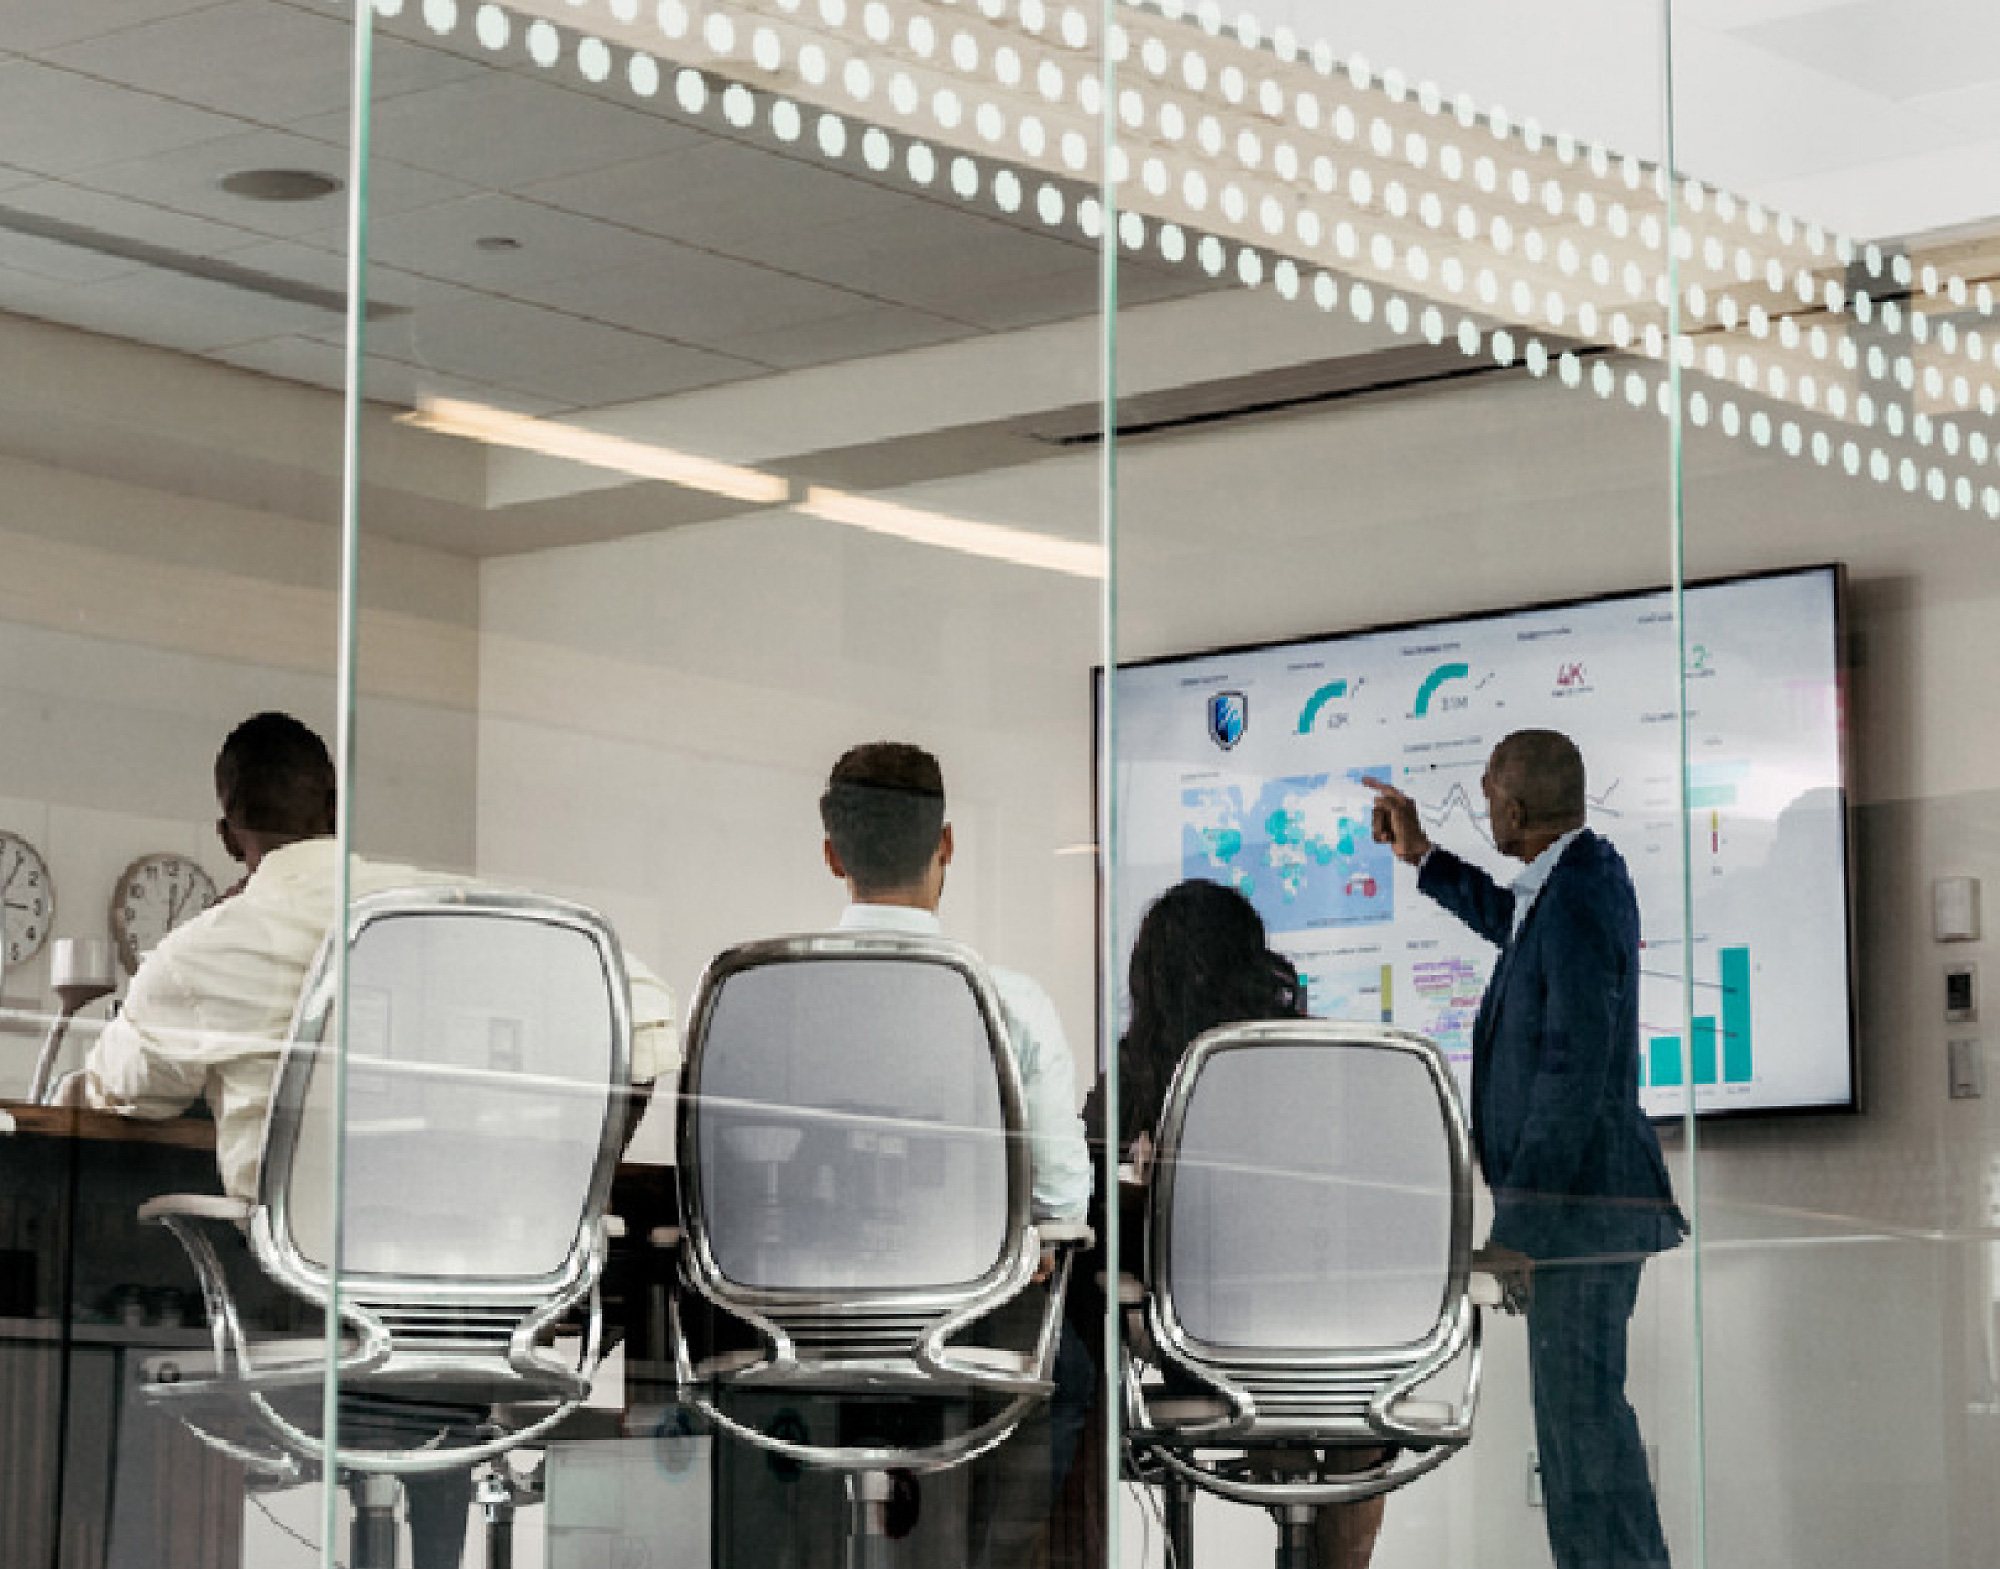 Cuatro profesionales en una sala de reuniones, uno apuntando a los datos digitales mostrados en una pantalla grande, vistos a través de una pared de cristal.